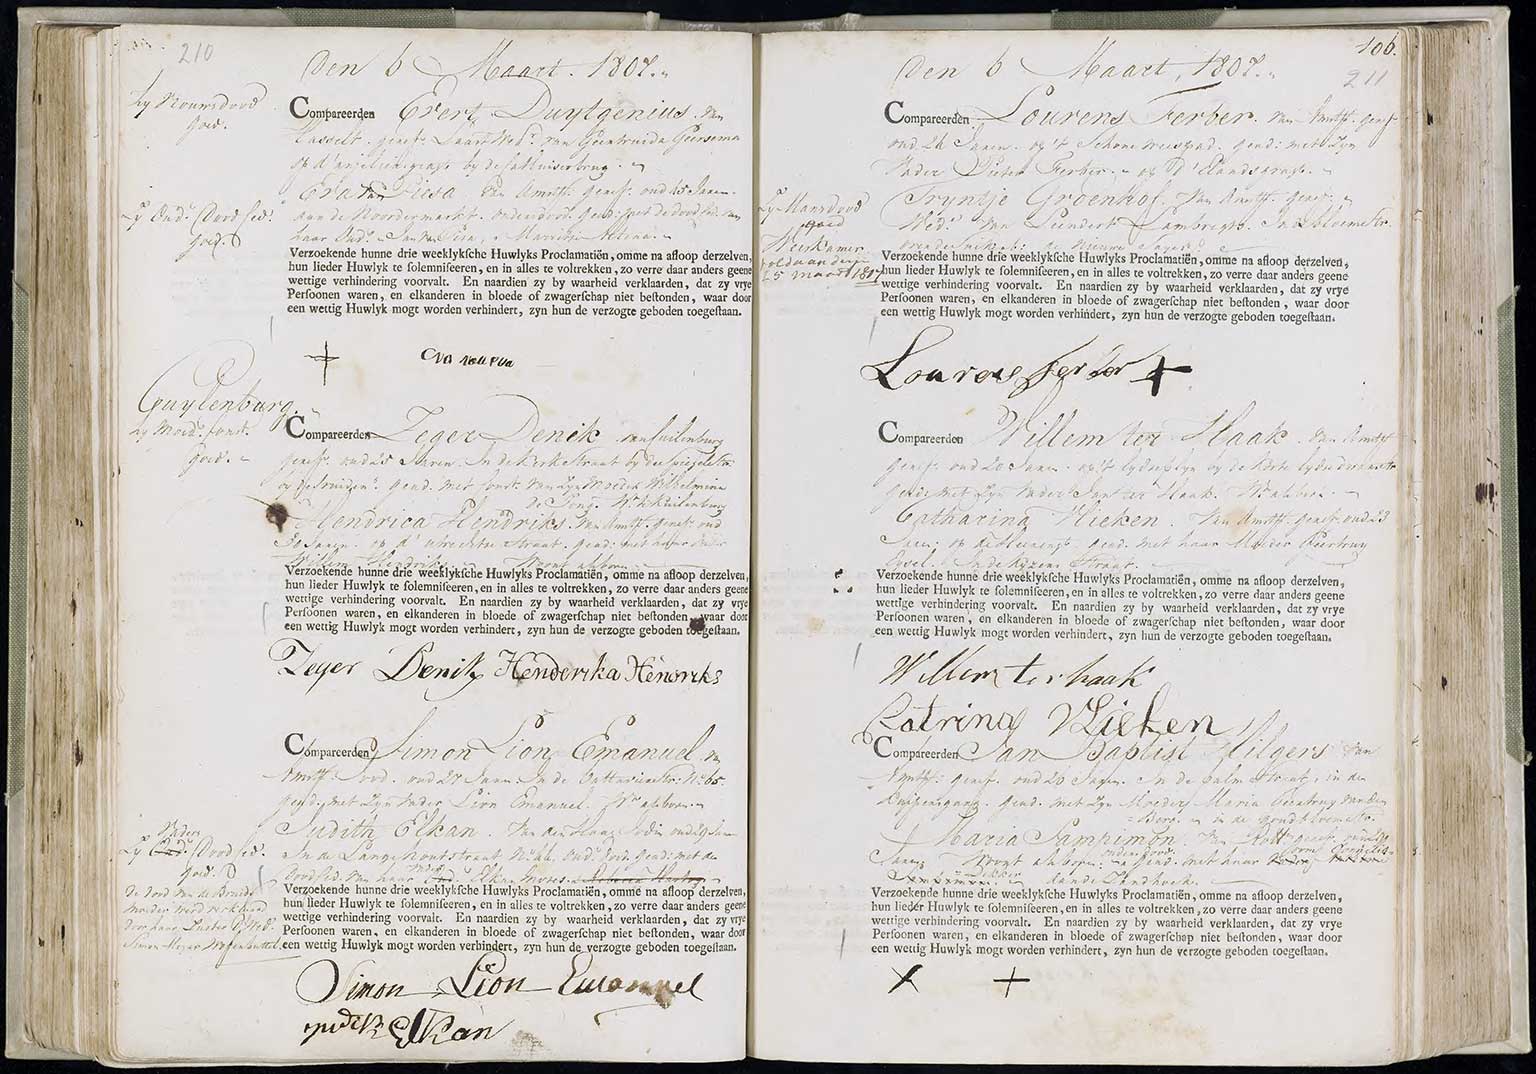 Register met de ondertrouw op 6 maart 1807 tussen Zeger Deenik en Hendrika Henriks, Amsterdam